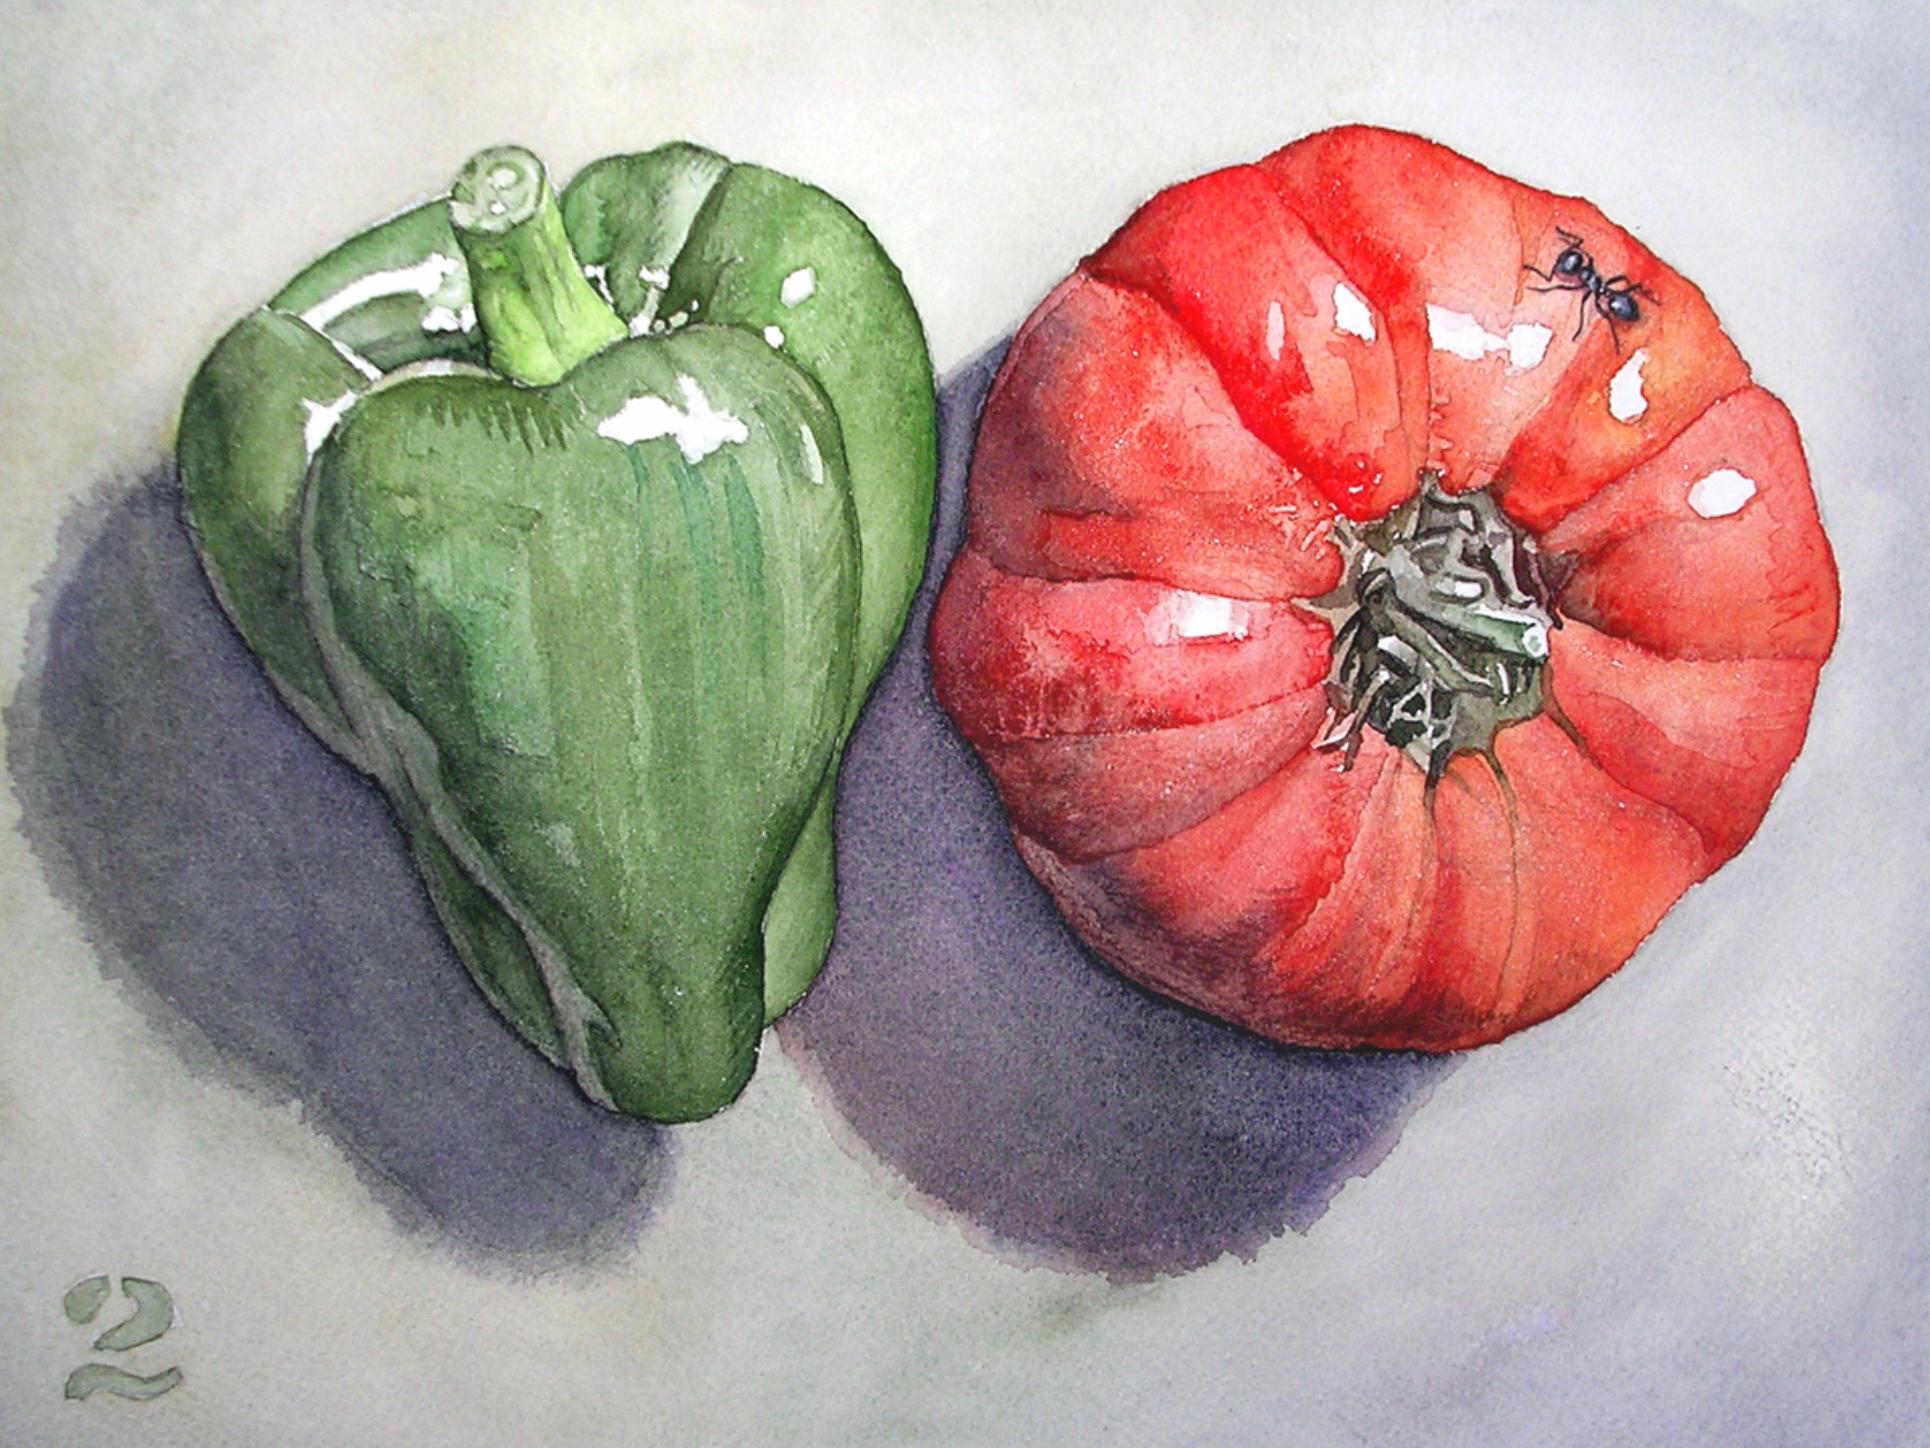 George Mauersberger Figurative Art – Gemüsestillleben Nr. 2, Contemporary Aquarell von Ohio trompe l'oeil Künstler